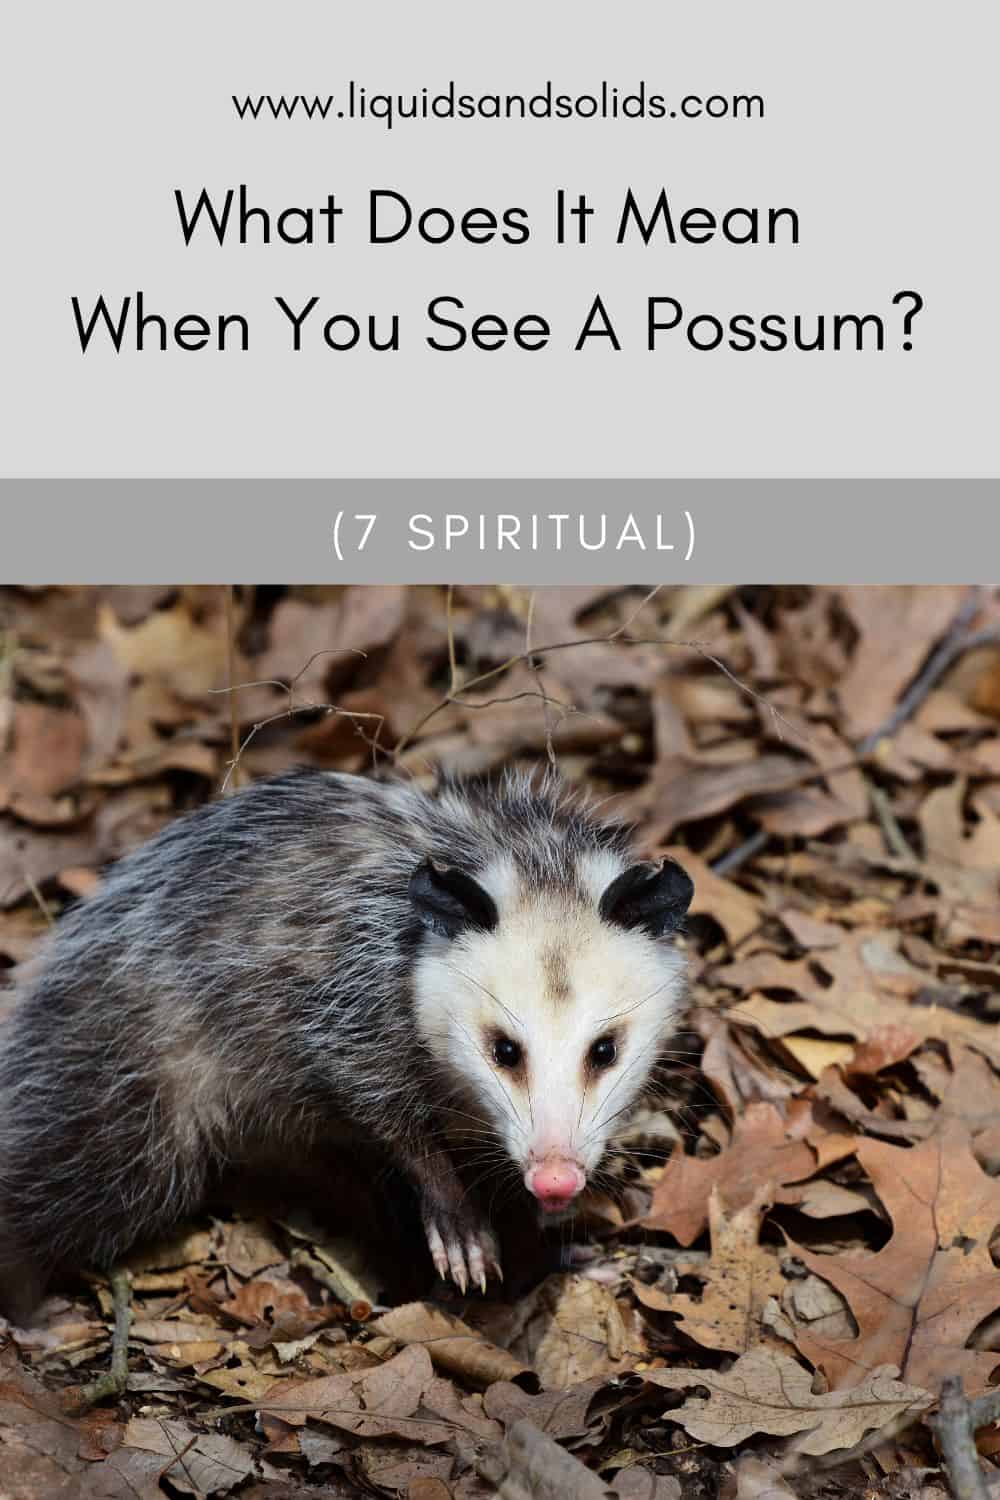  Ce que signifie voir un opossum (7 significations spirituelles)